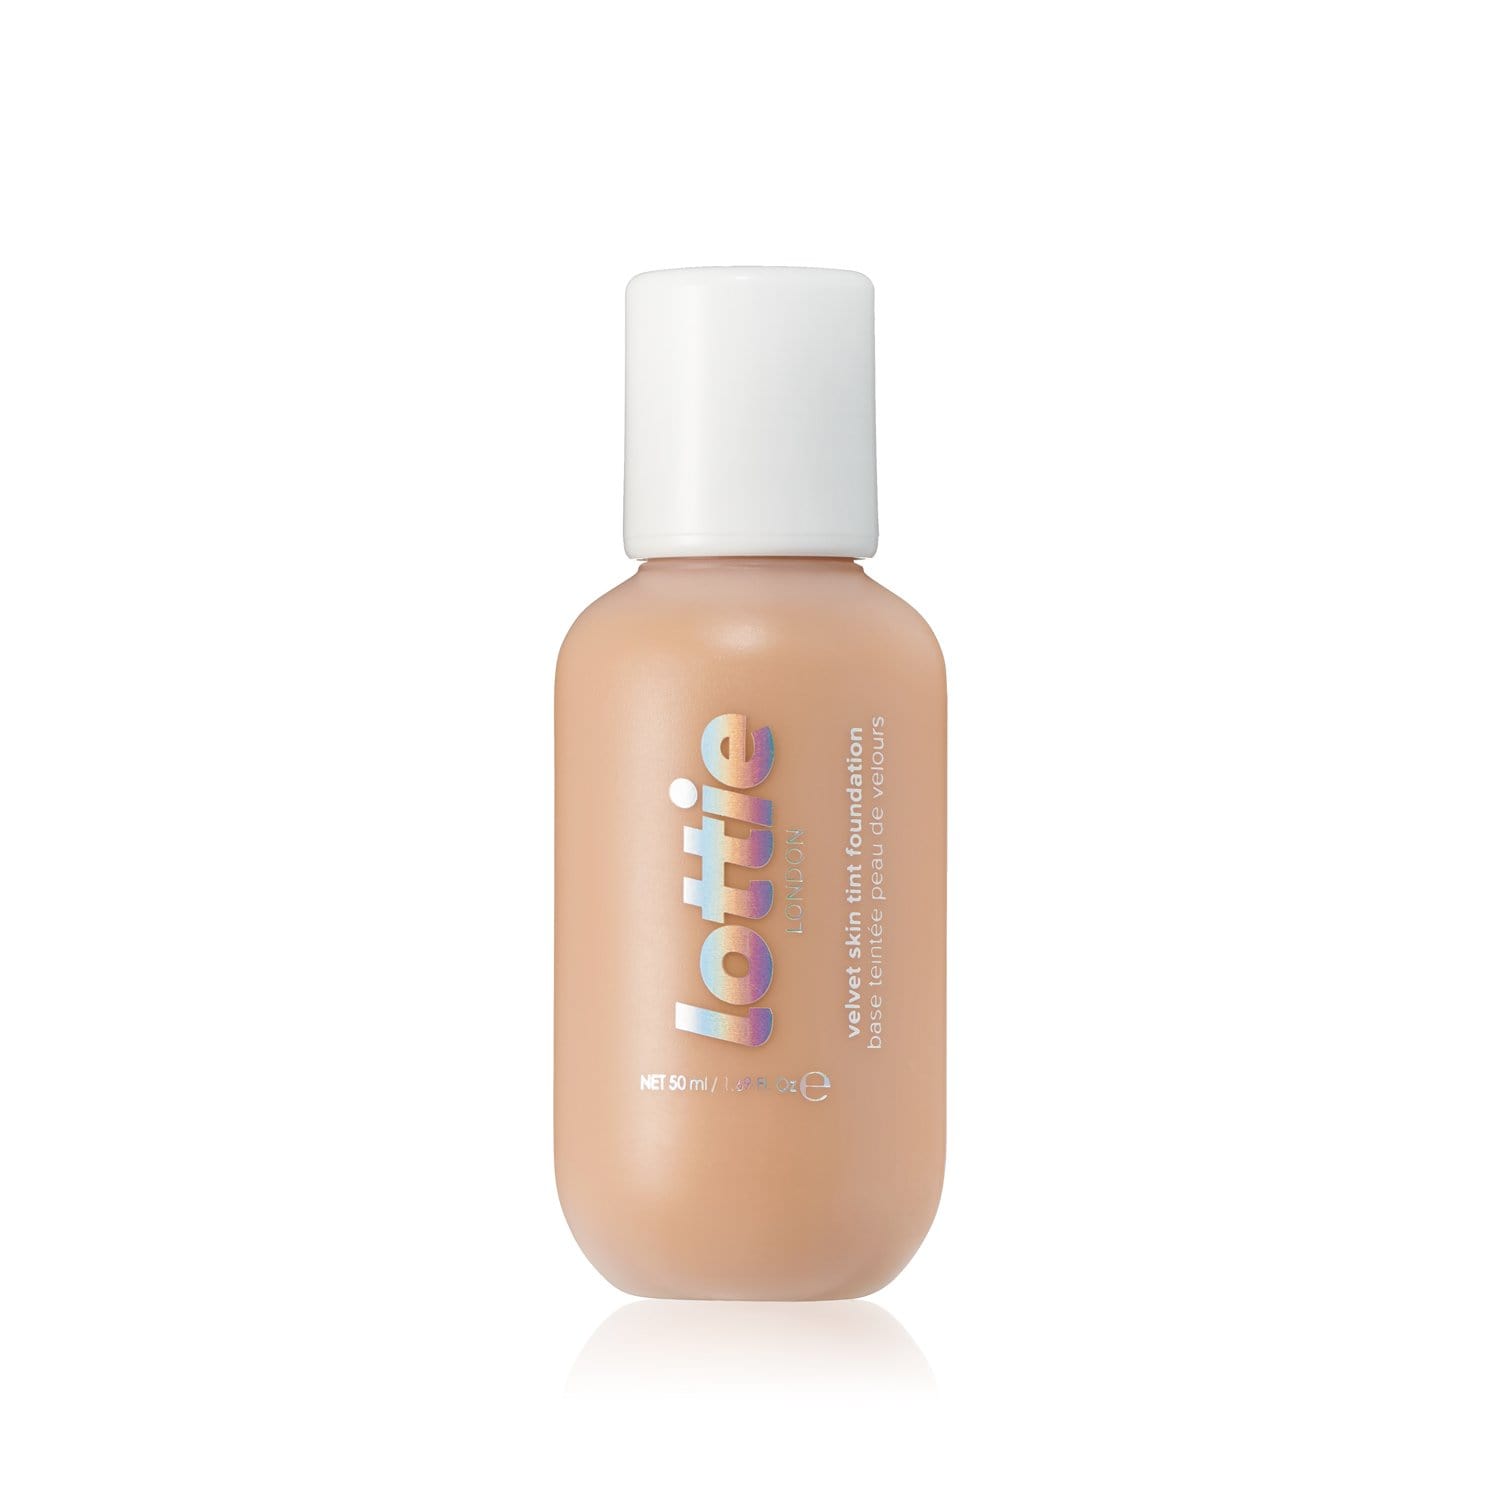 velvet skin tint foundation tan po30 - medium peach Makeup velvet matte foundation